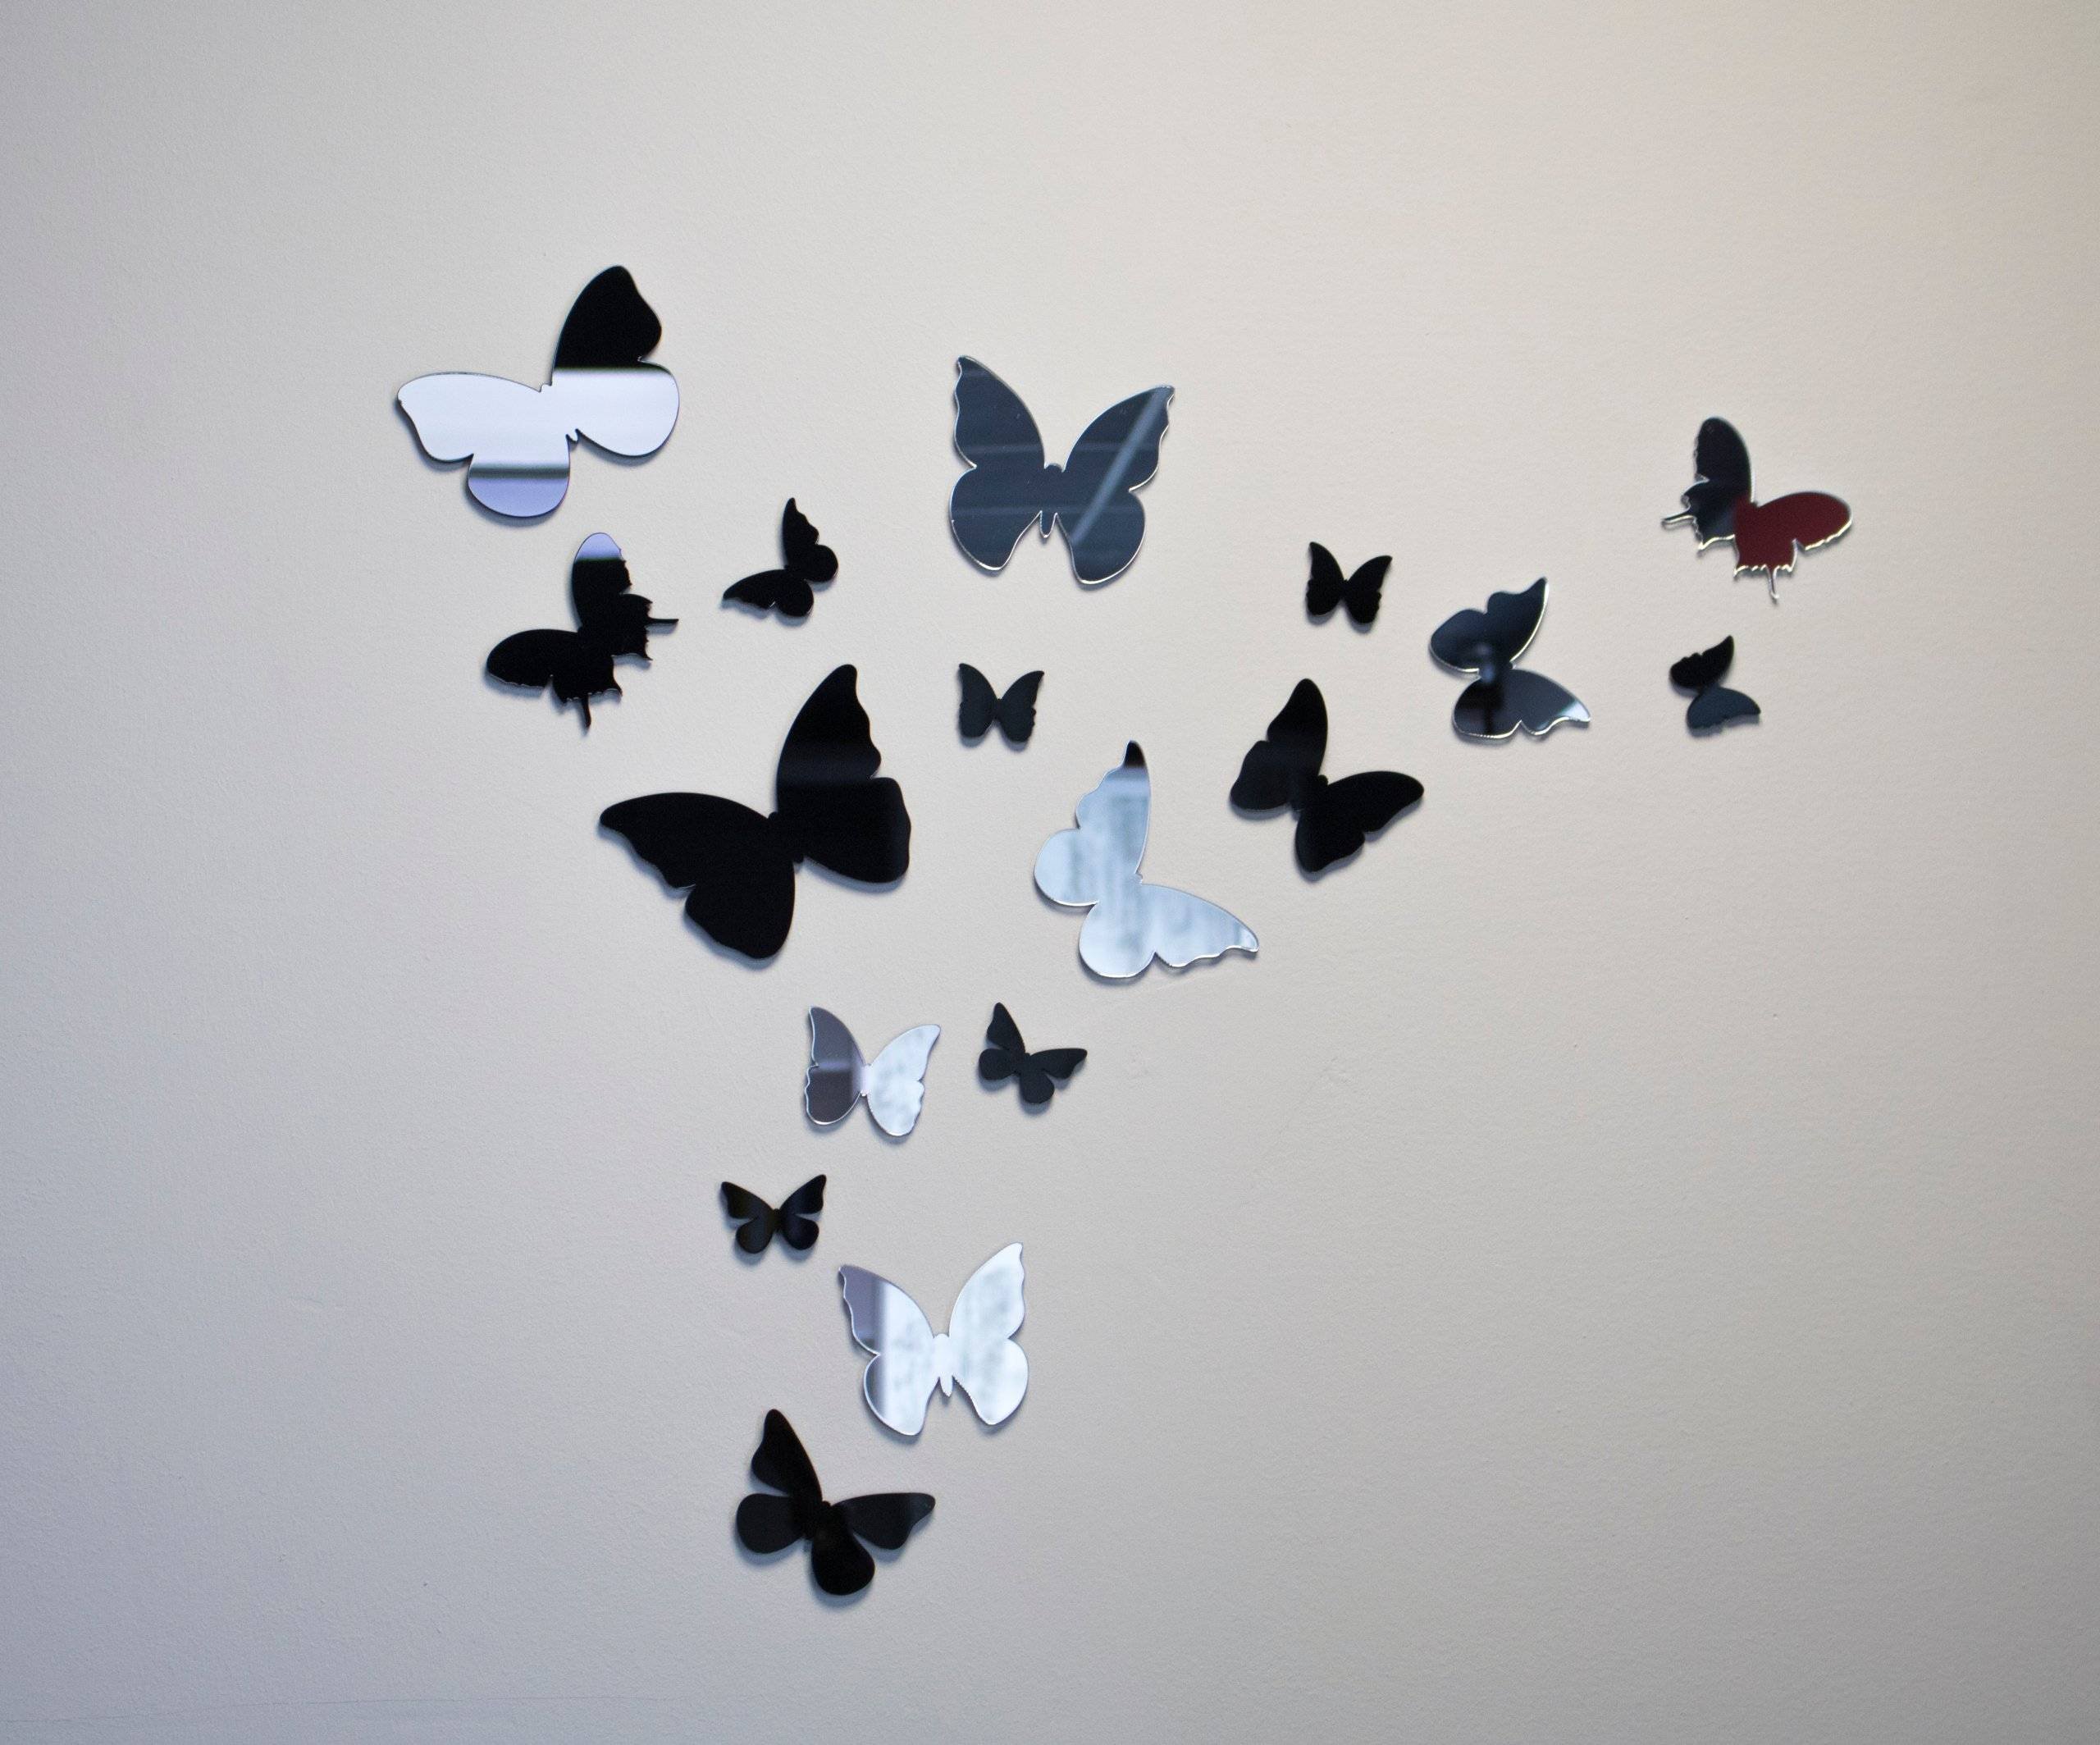 Бабочки клеит. Бабочки для декора. Бабочки на стену декор. Украсить стену бабочками. Композиция из бабочек на стене.